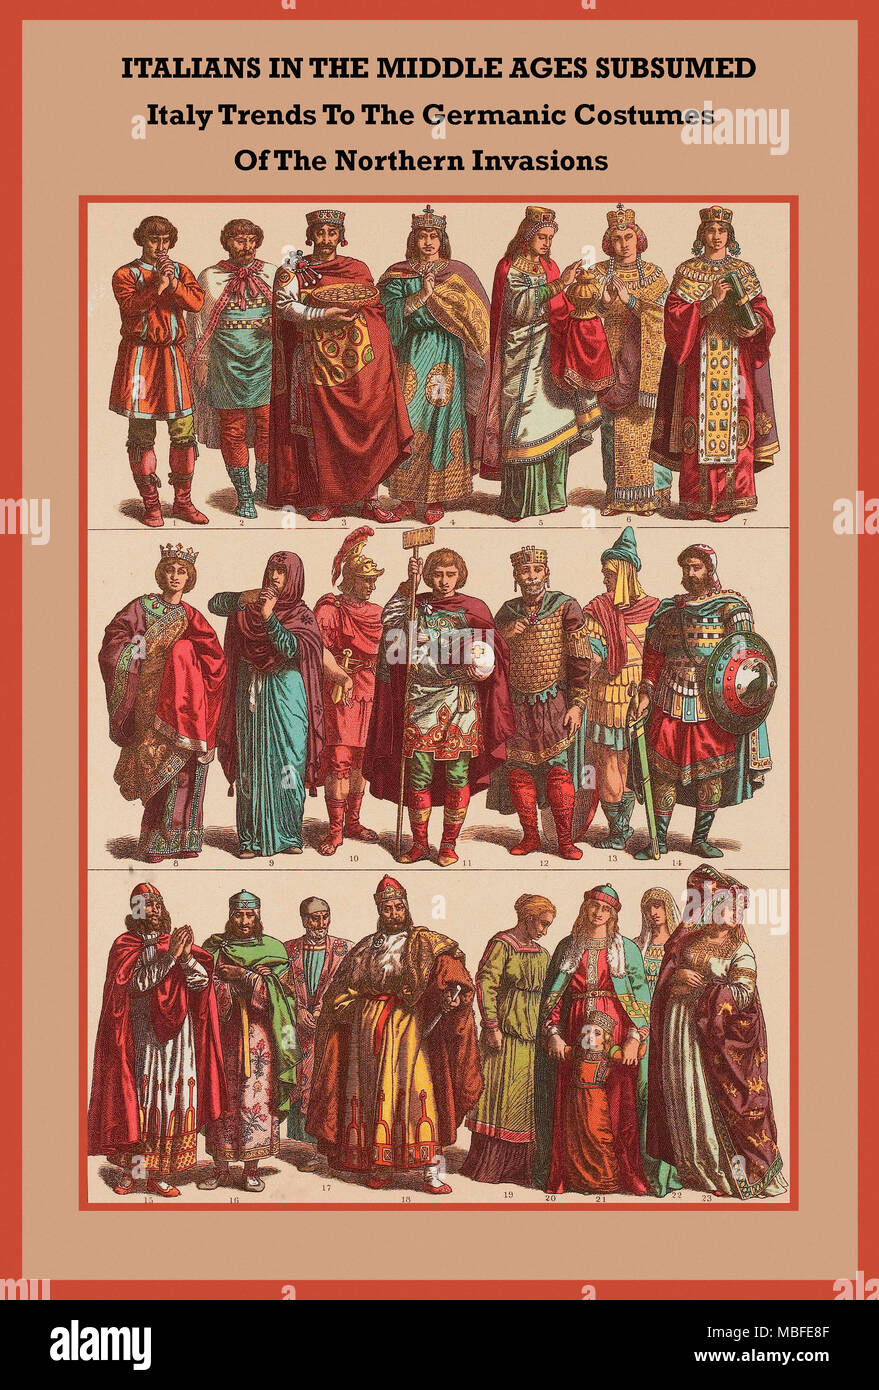 Les Italiens au Moyen Âge l'Italie à la tendances subsumés costumes germaniques des invasions du nord Banque D'Images